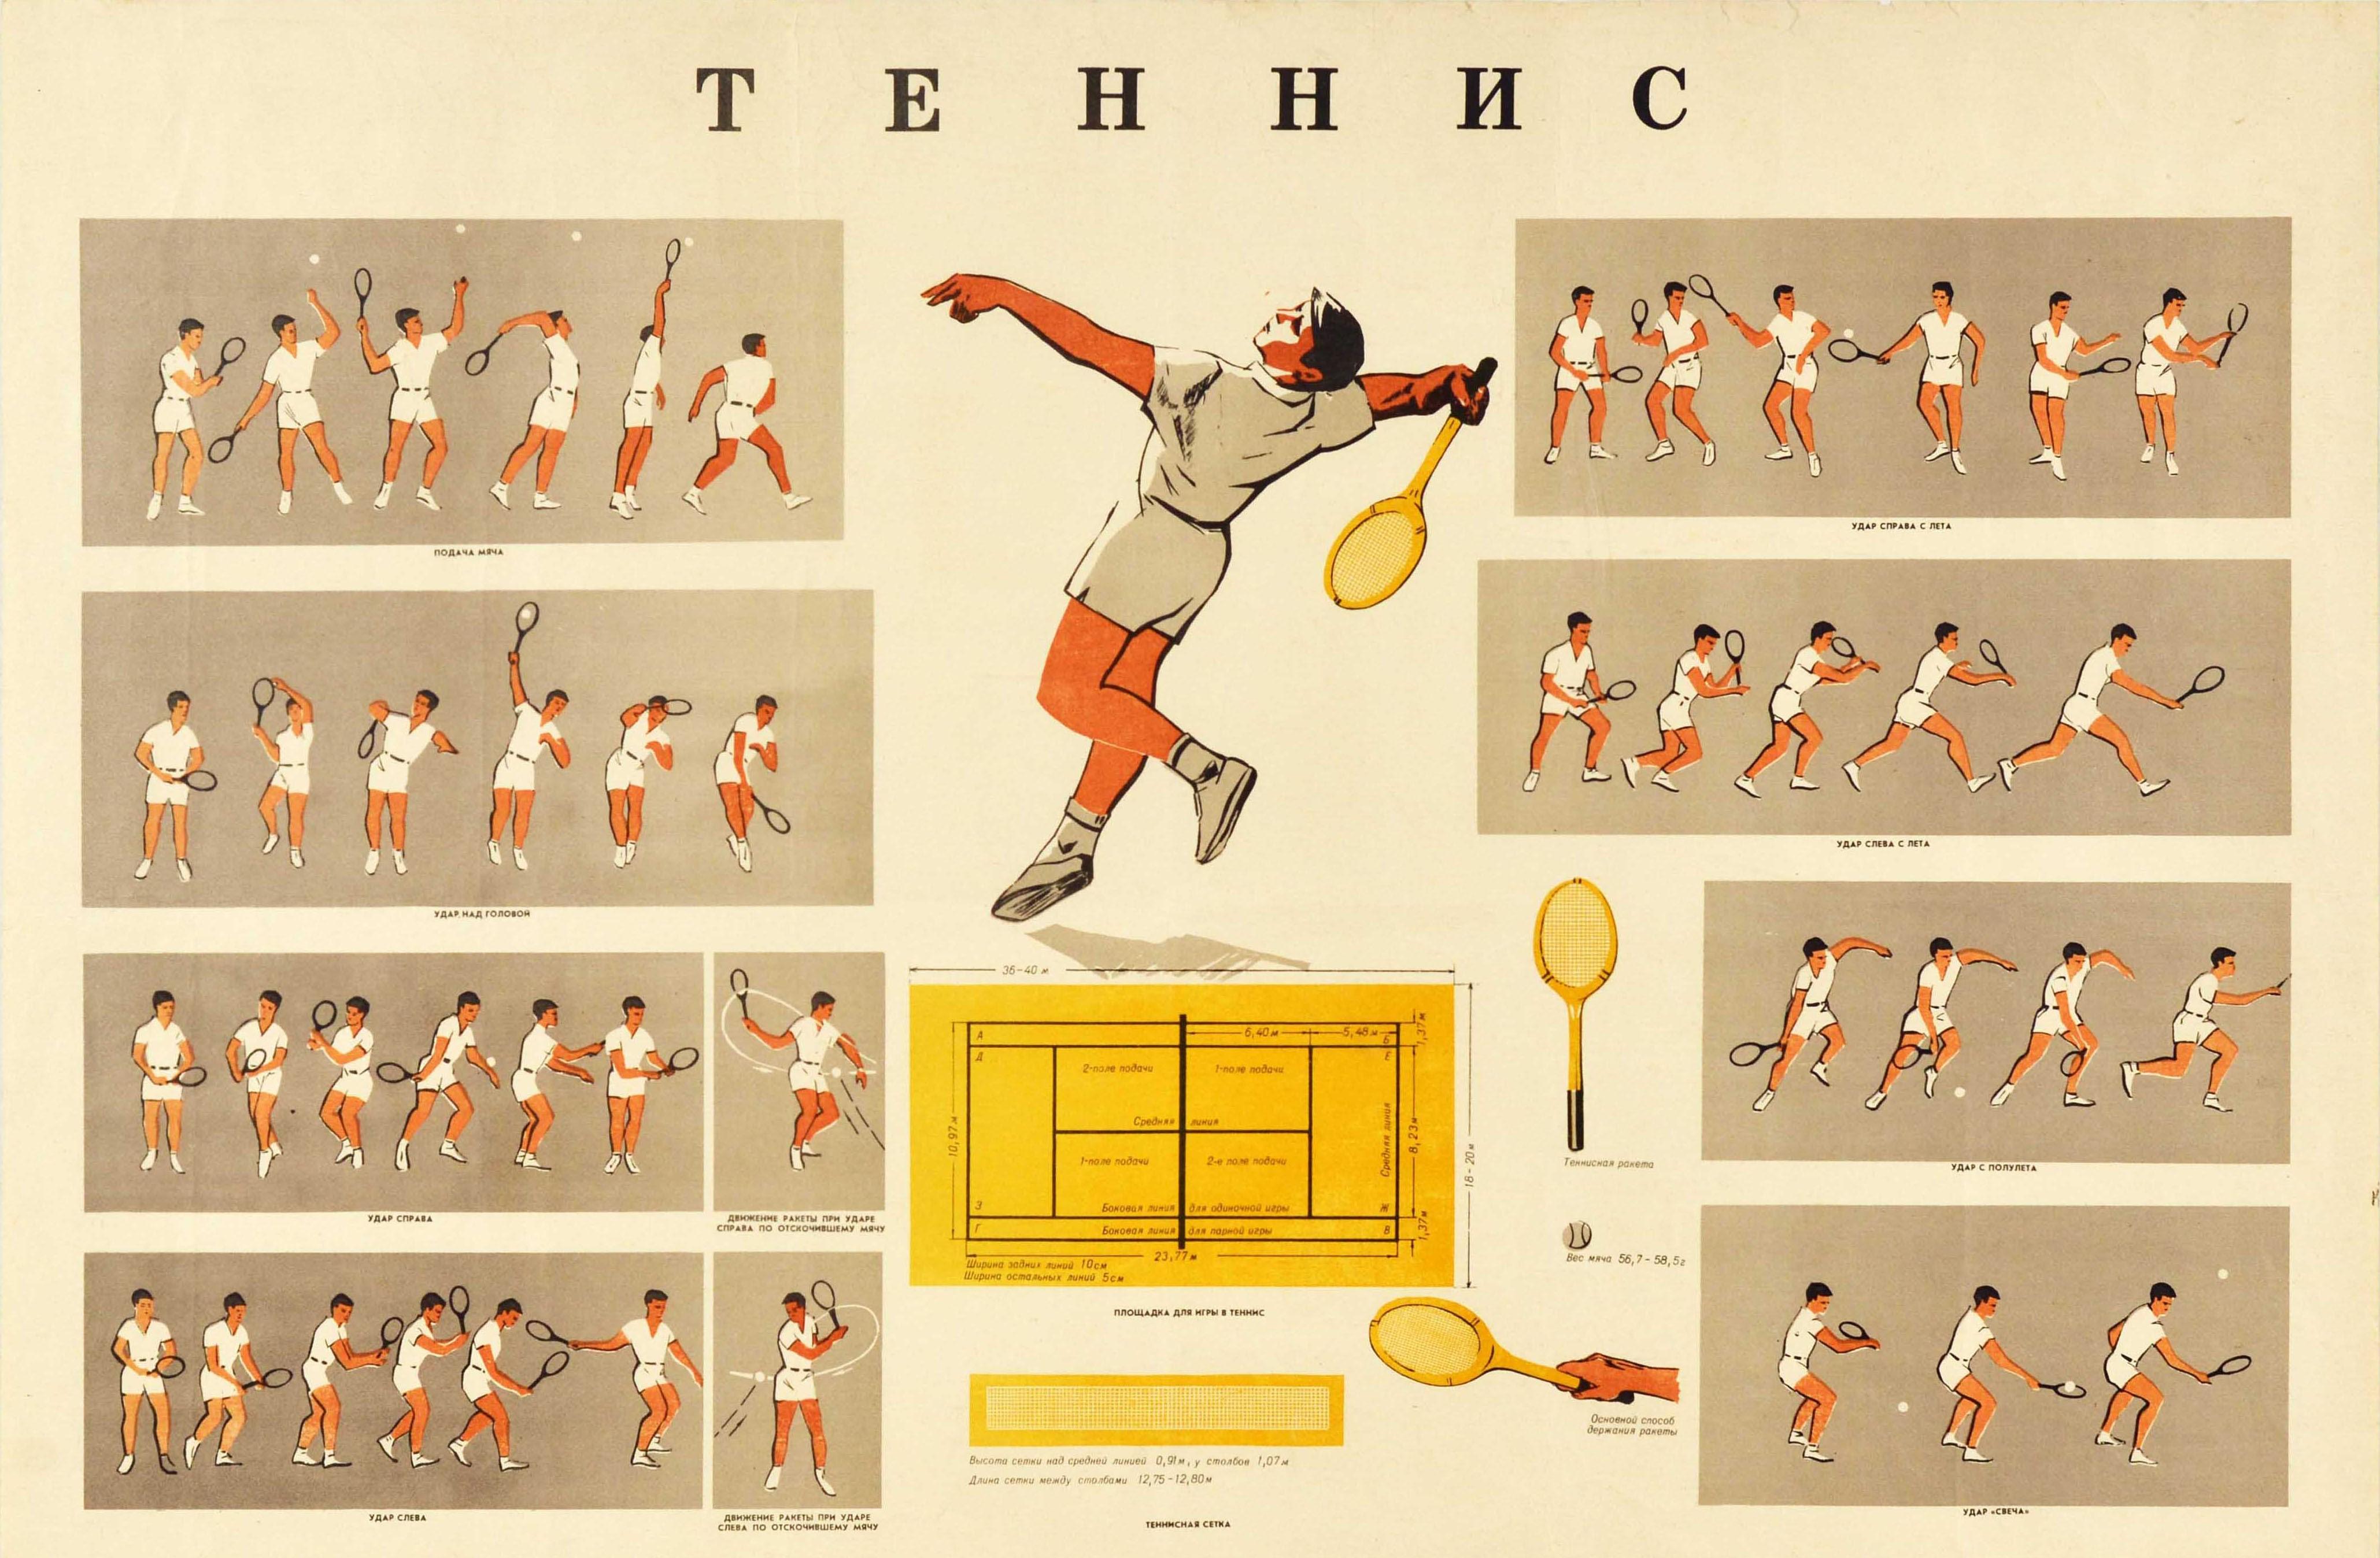 Affiche d'enseignement sportif soviétique d'époque montrant les positions, les mouvements et le jeu de tennis / ? ????? dans des images représentant un joueur dans chaque case effectuant diverses actions telles que servir la balle et frapper un coup